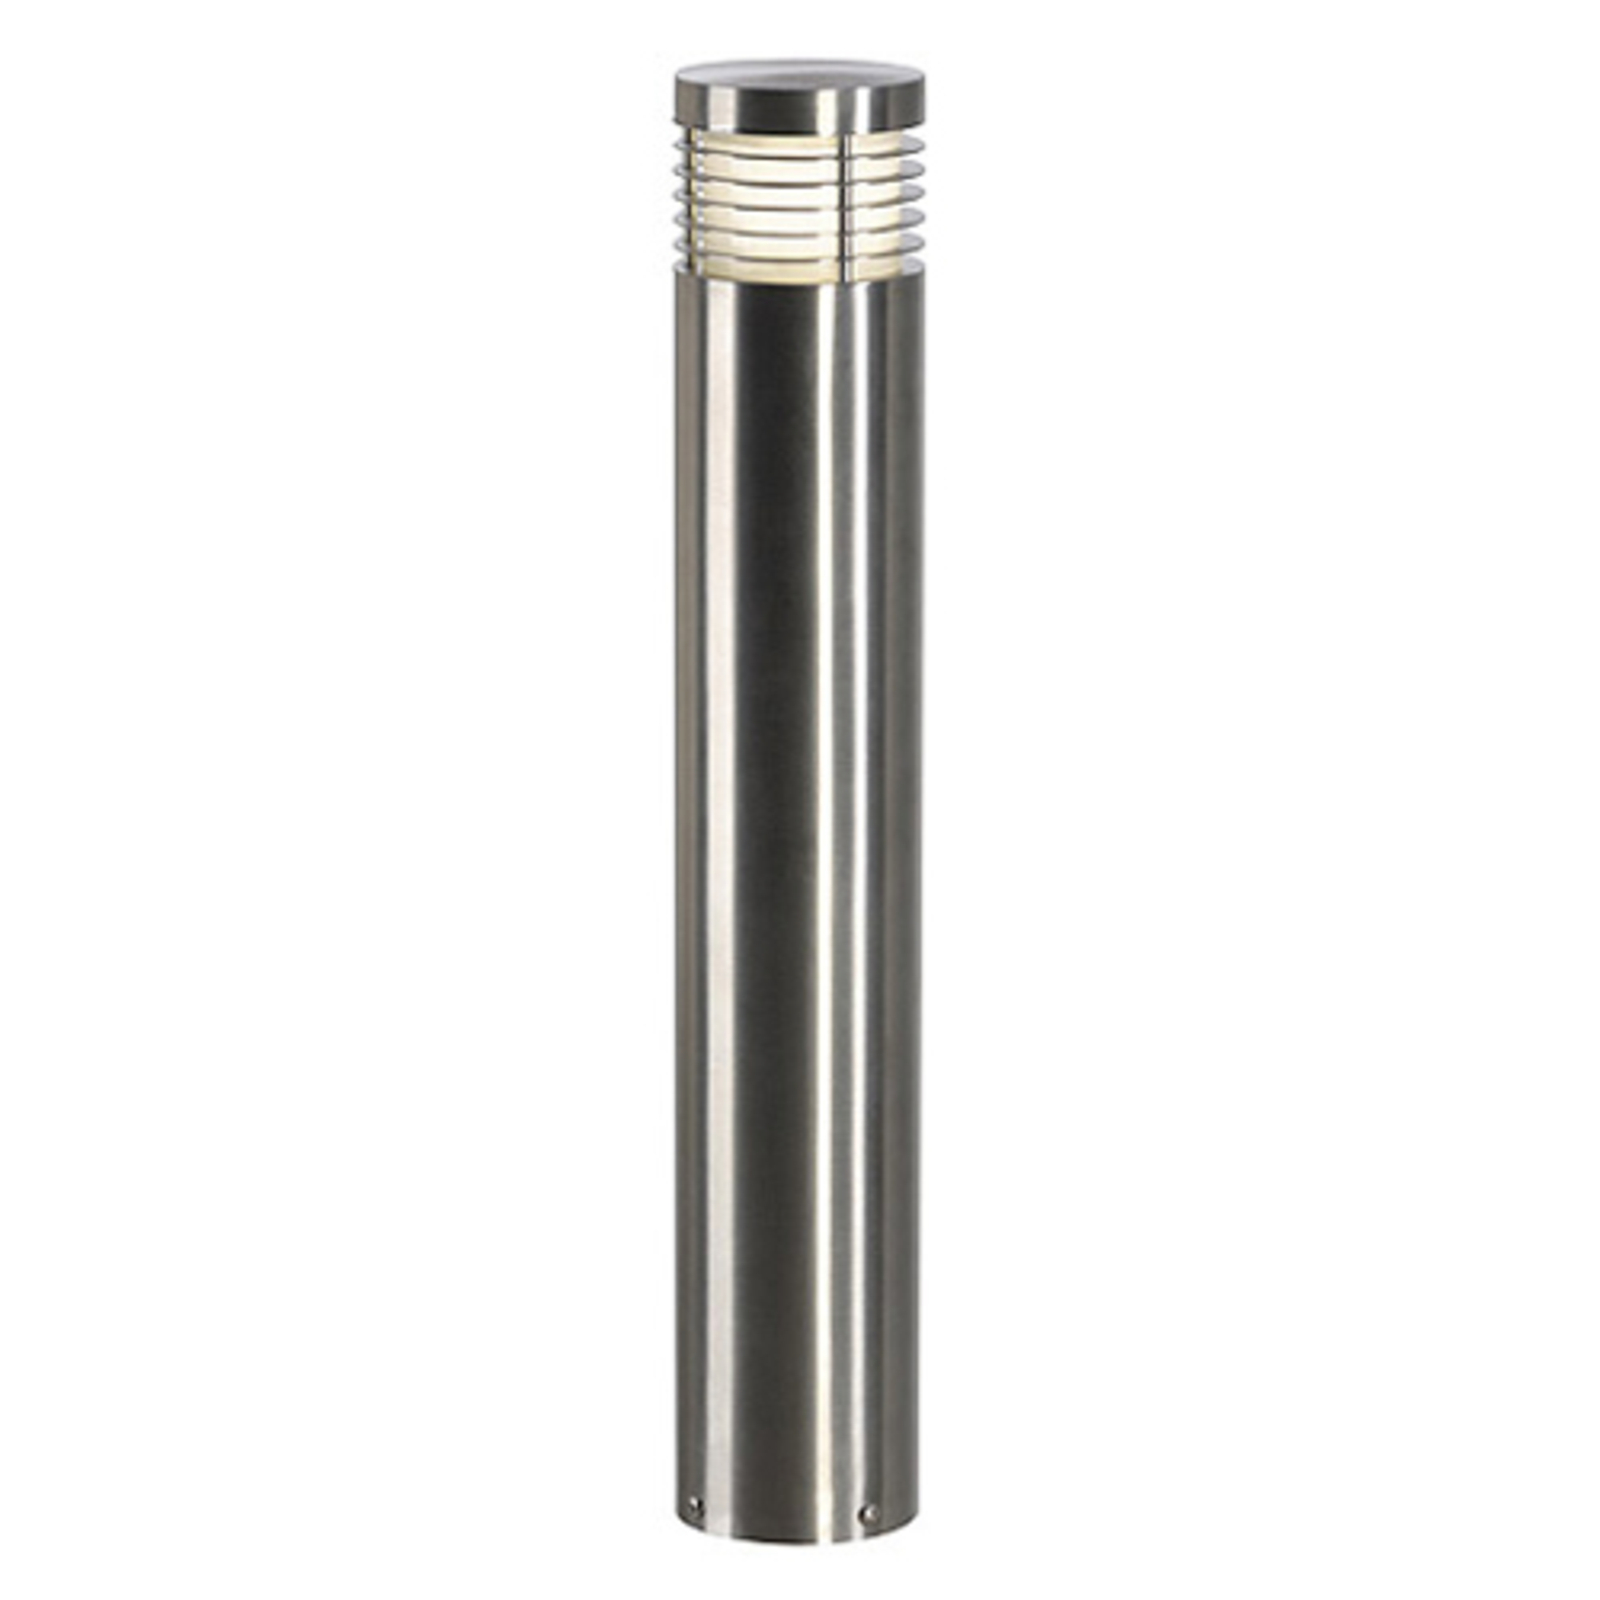 SLV Vap Slim 60 stainless steel pillar light